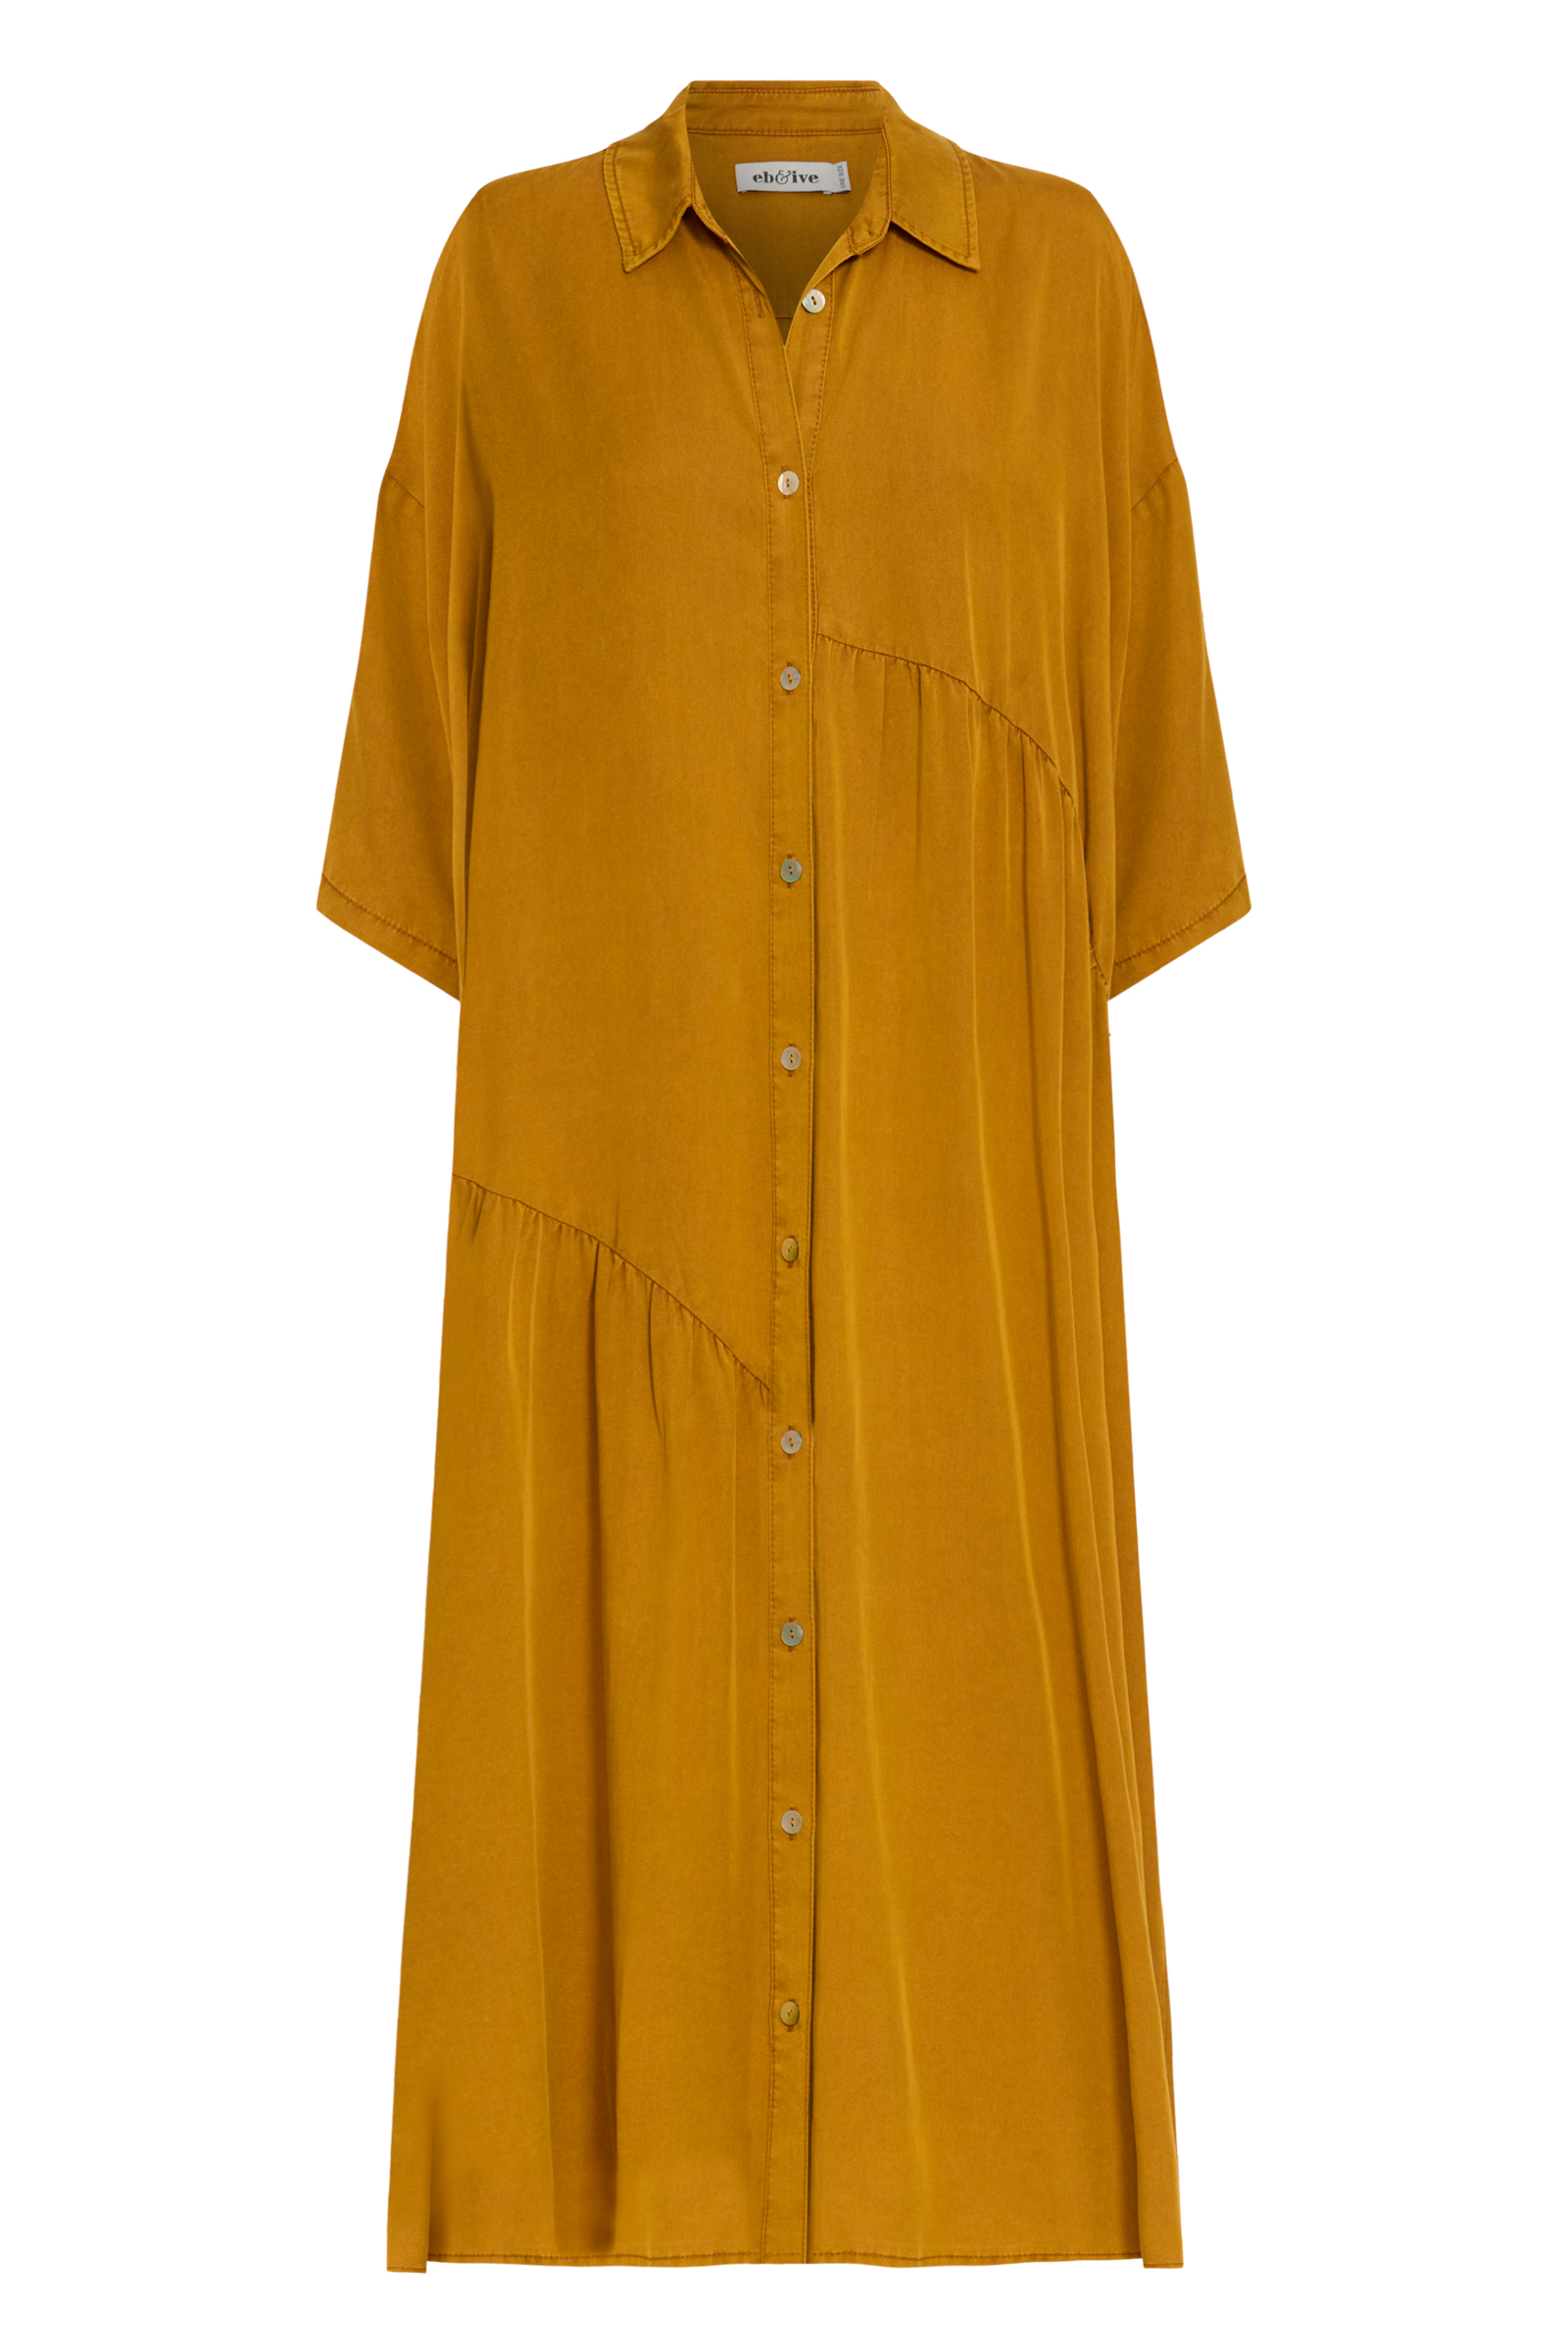 Eb & Ive Honey Elan Shirt Dress